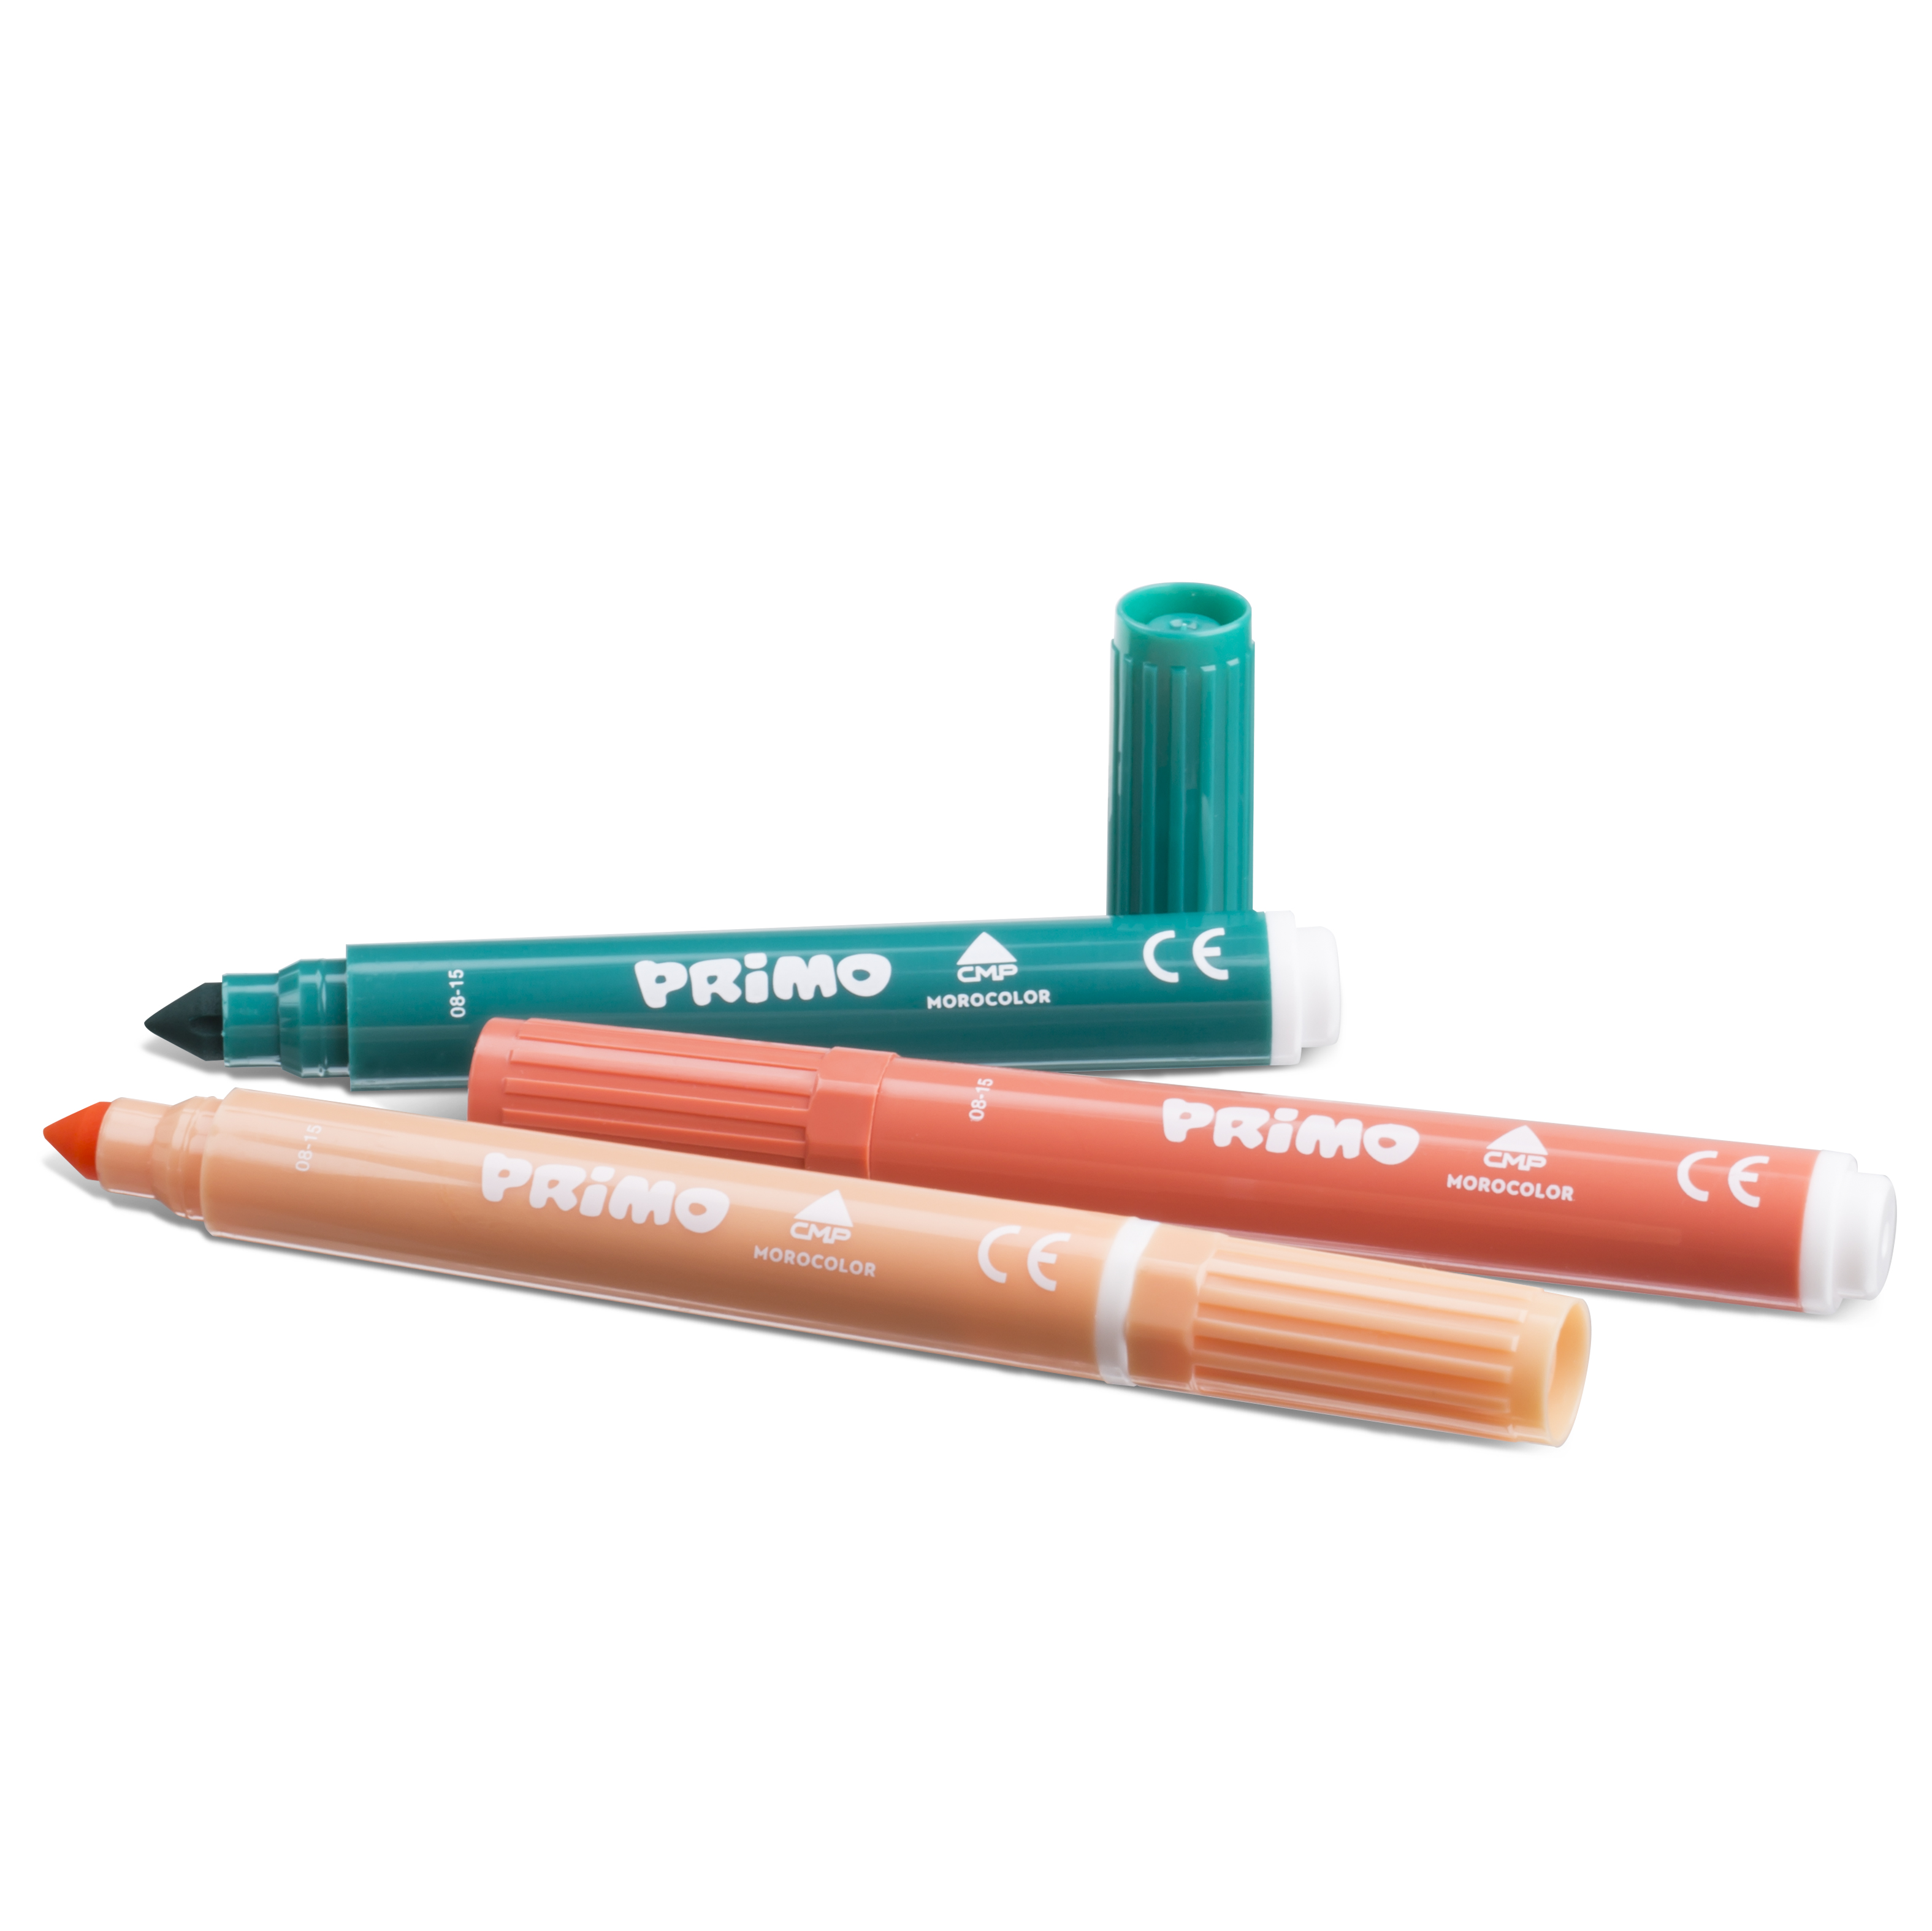  PRIMO Jumbo fiber pen set of 24 pcs